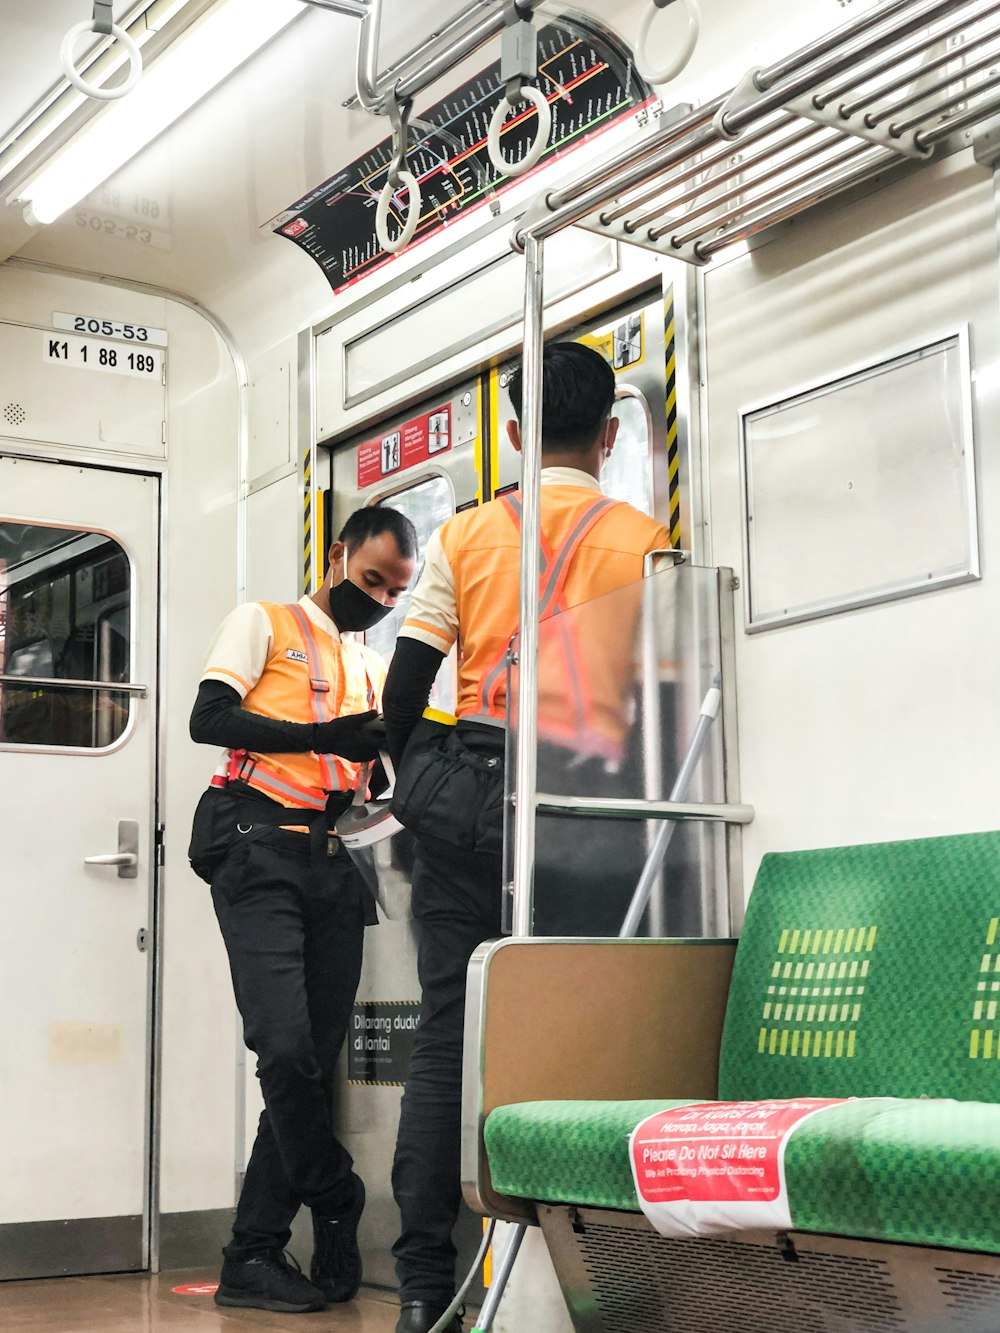 homme en veste orange et noire et pantalon noir debout à côté d’un train blanc et vert pendant